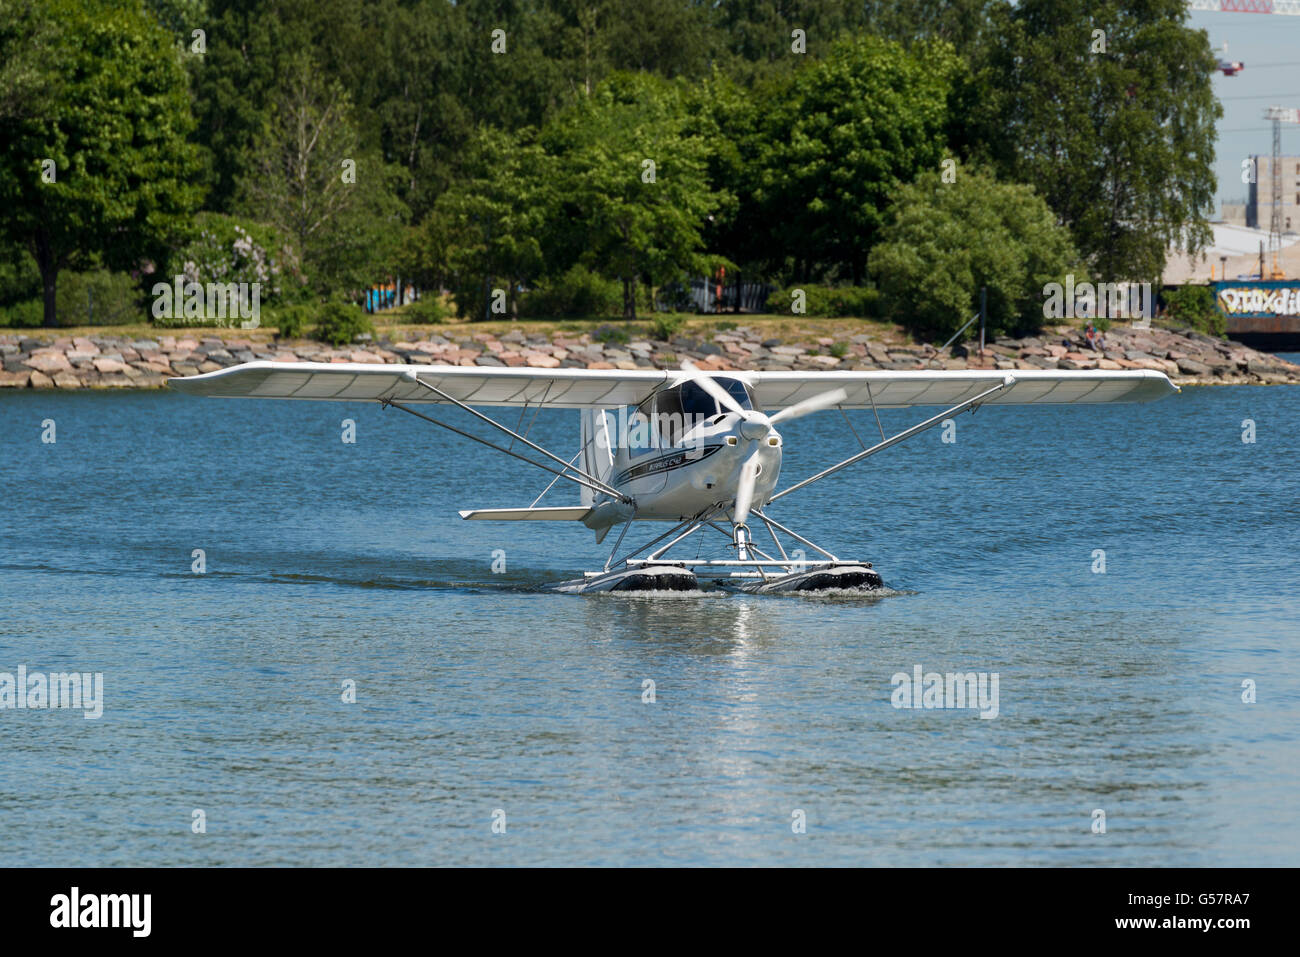 HELSINKI, Finnland - 14. Juni 2016: ein Wasserflugzeug Landung im Hafen von Helsinki; Finnland Stockfoto